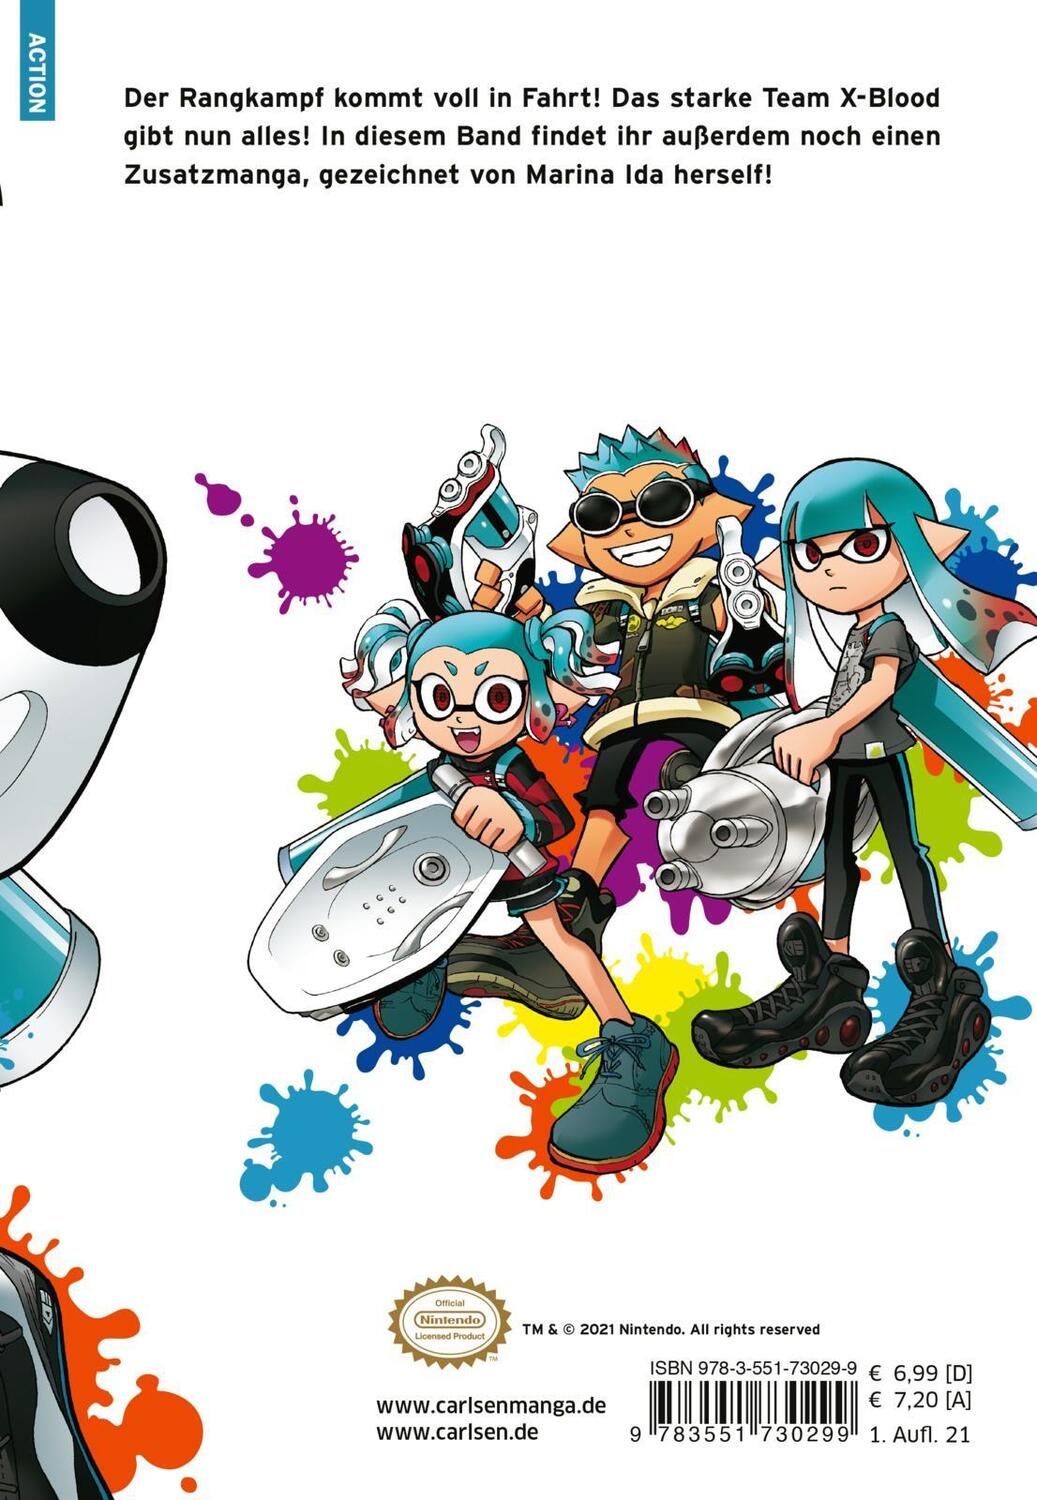 Rückseite: 9783551730299 | Splatoon 10 | Das Nintendo-Game als Manga! Ideal für Kinder und Gamer!